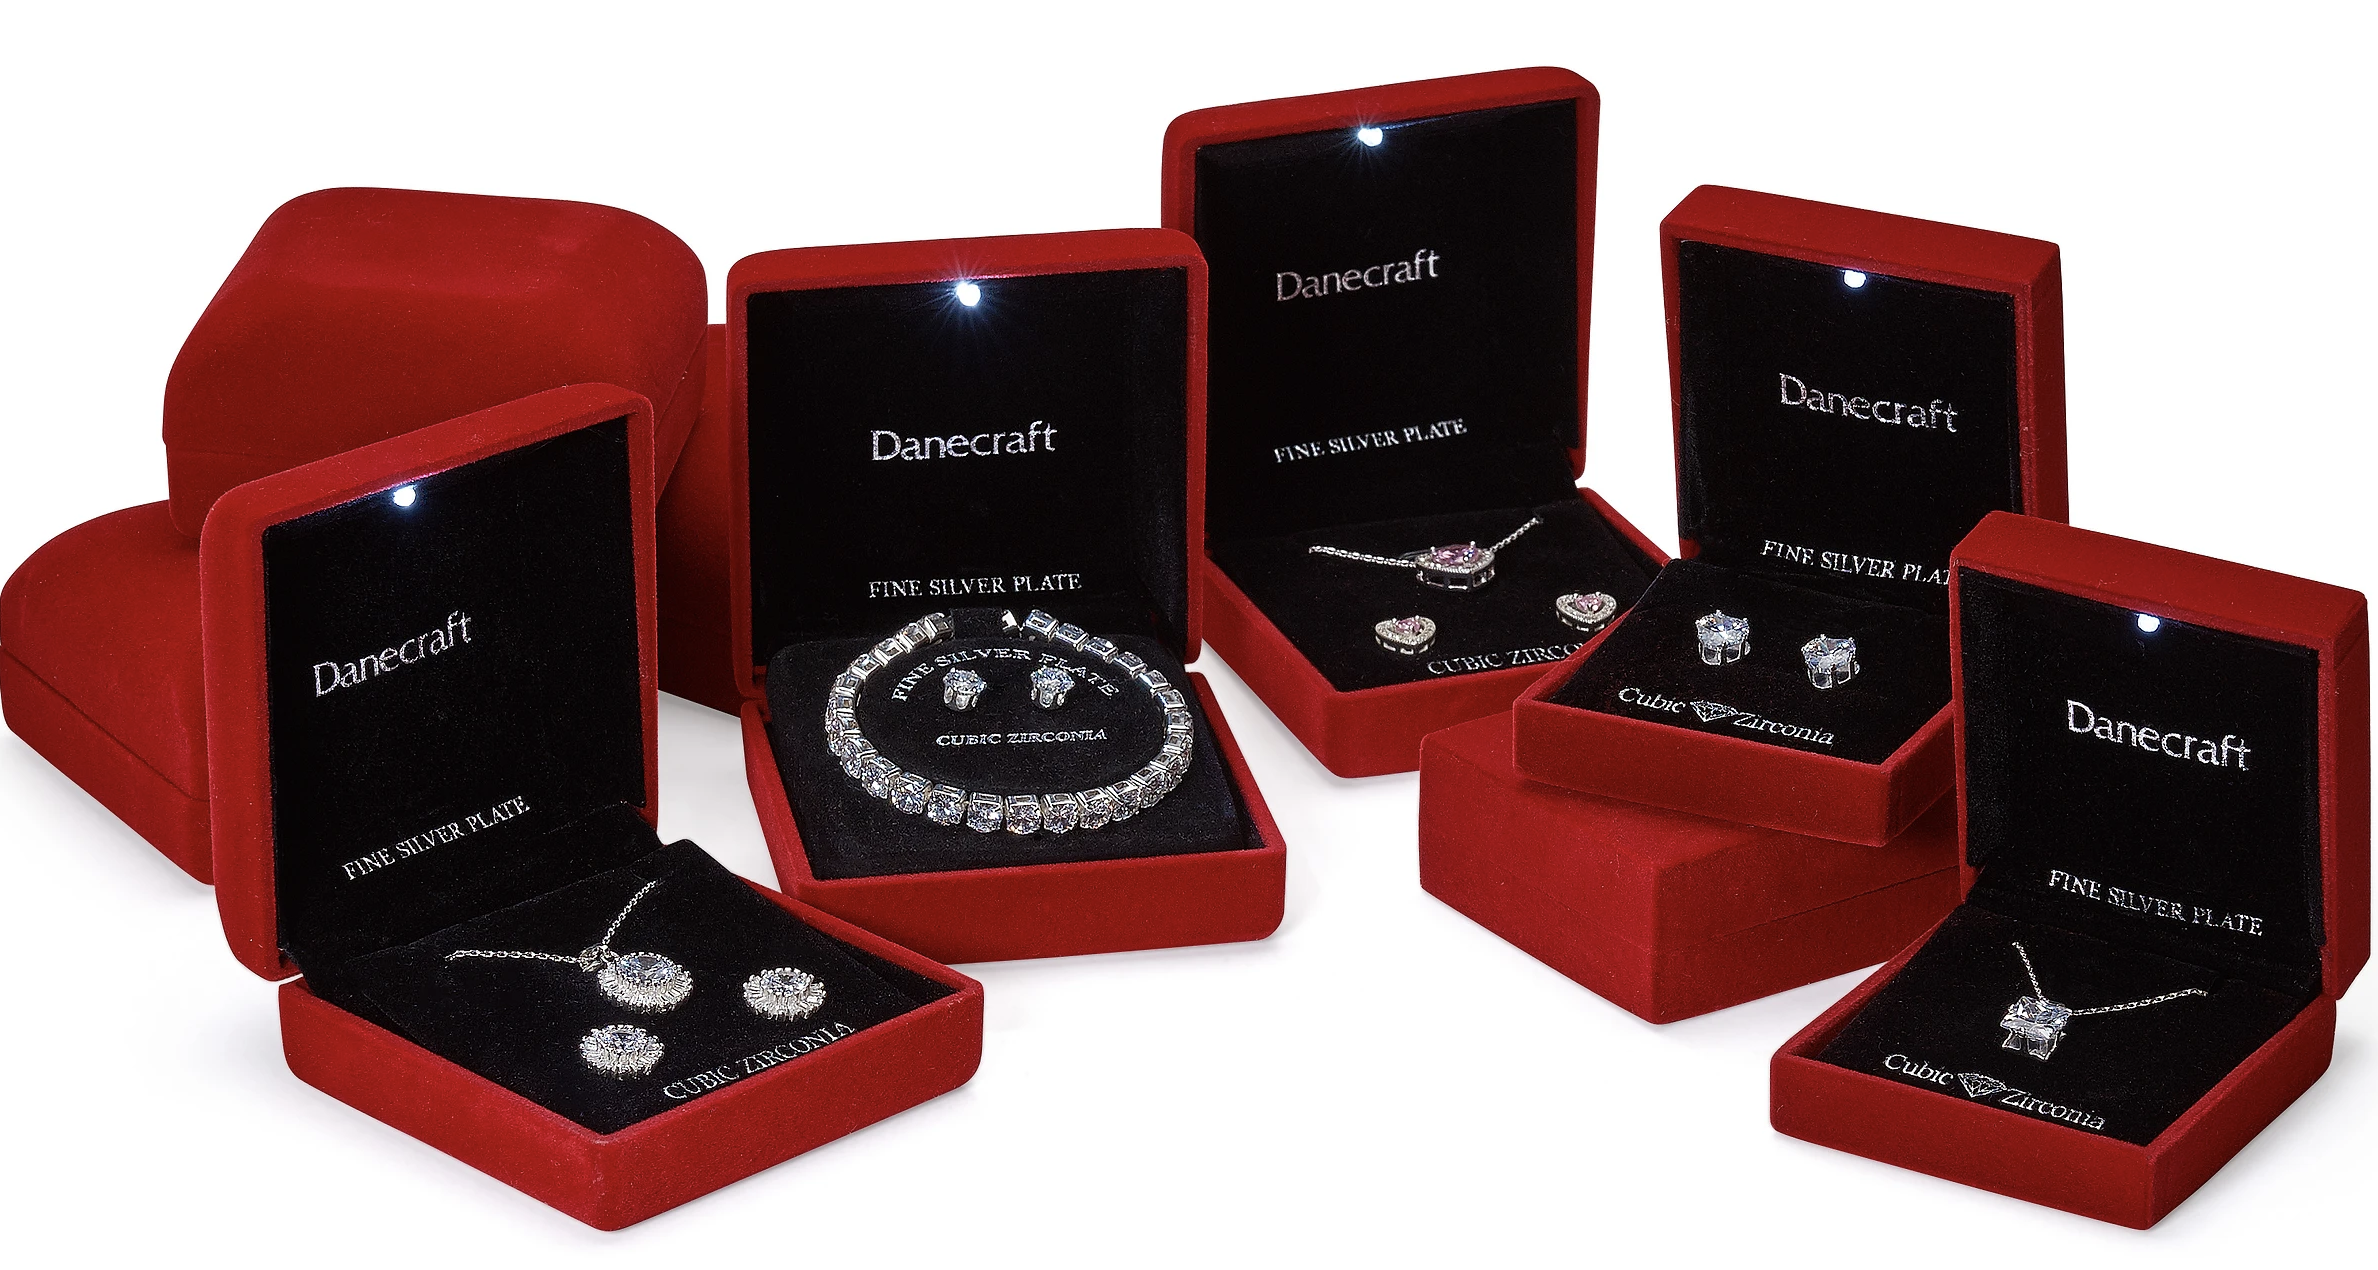 美国配饰生产商 American Exchange 收购珠宝公司 Danecraft 及旗下品牌